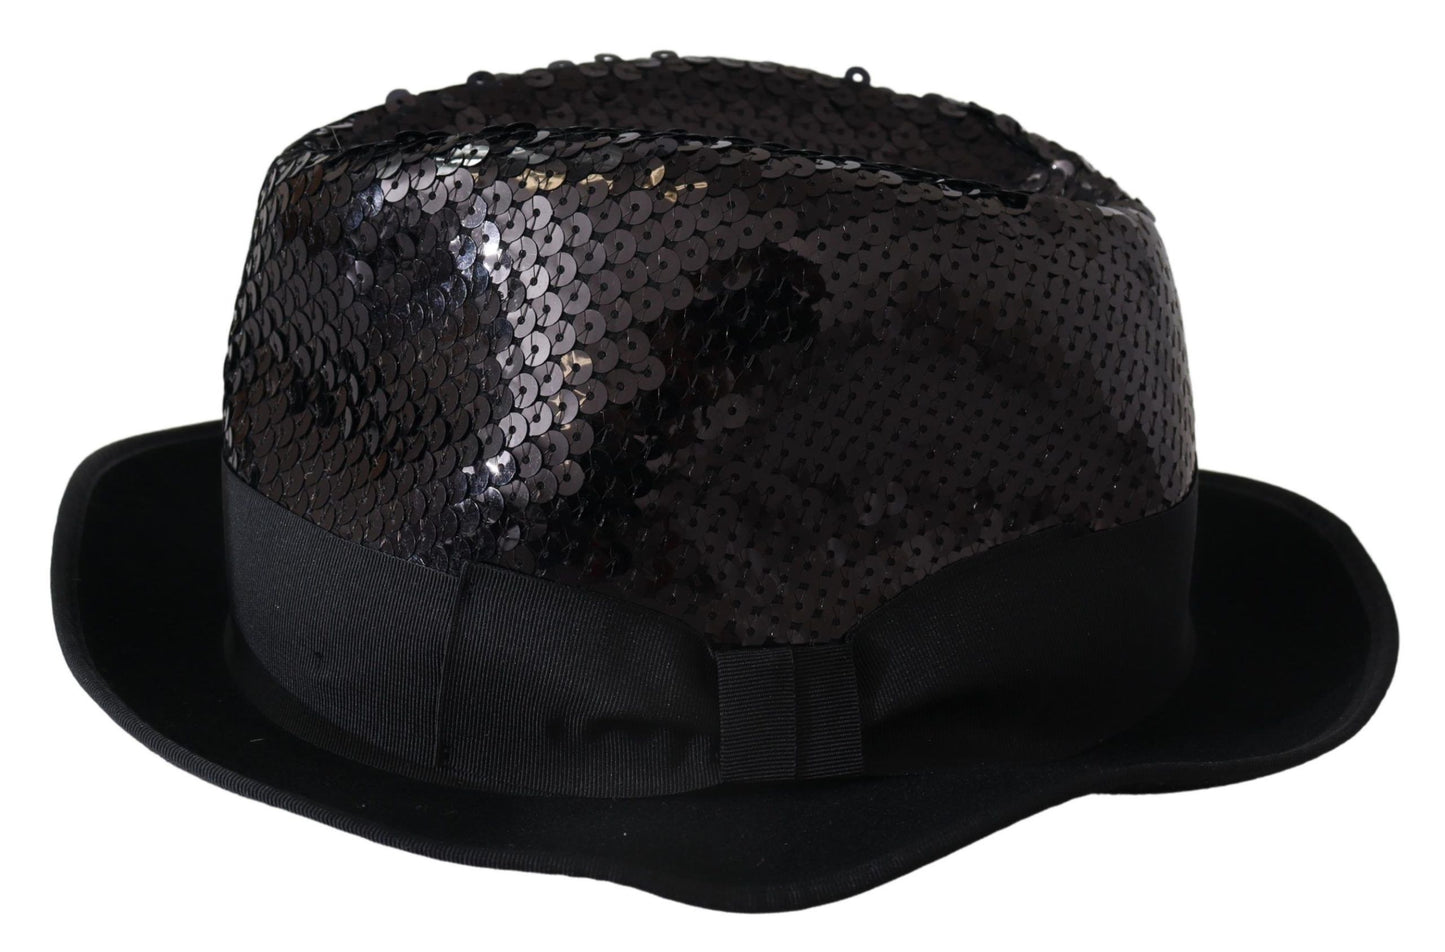 Dolce & gabbana black sequin fedora hat